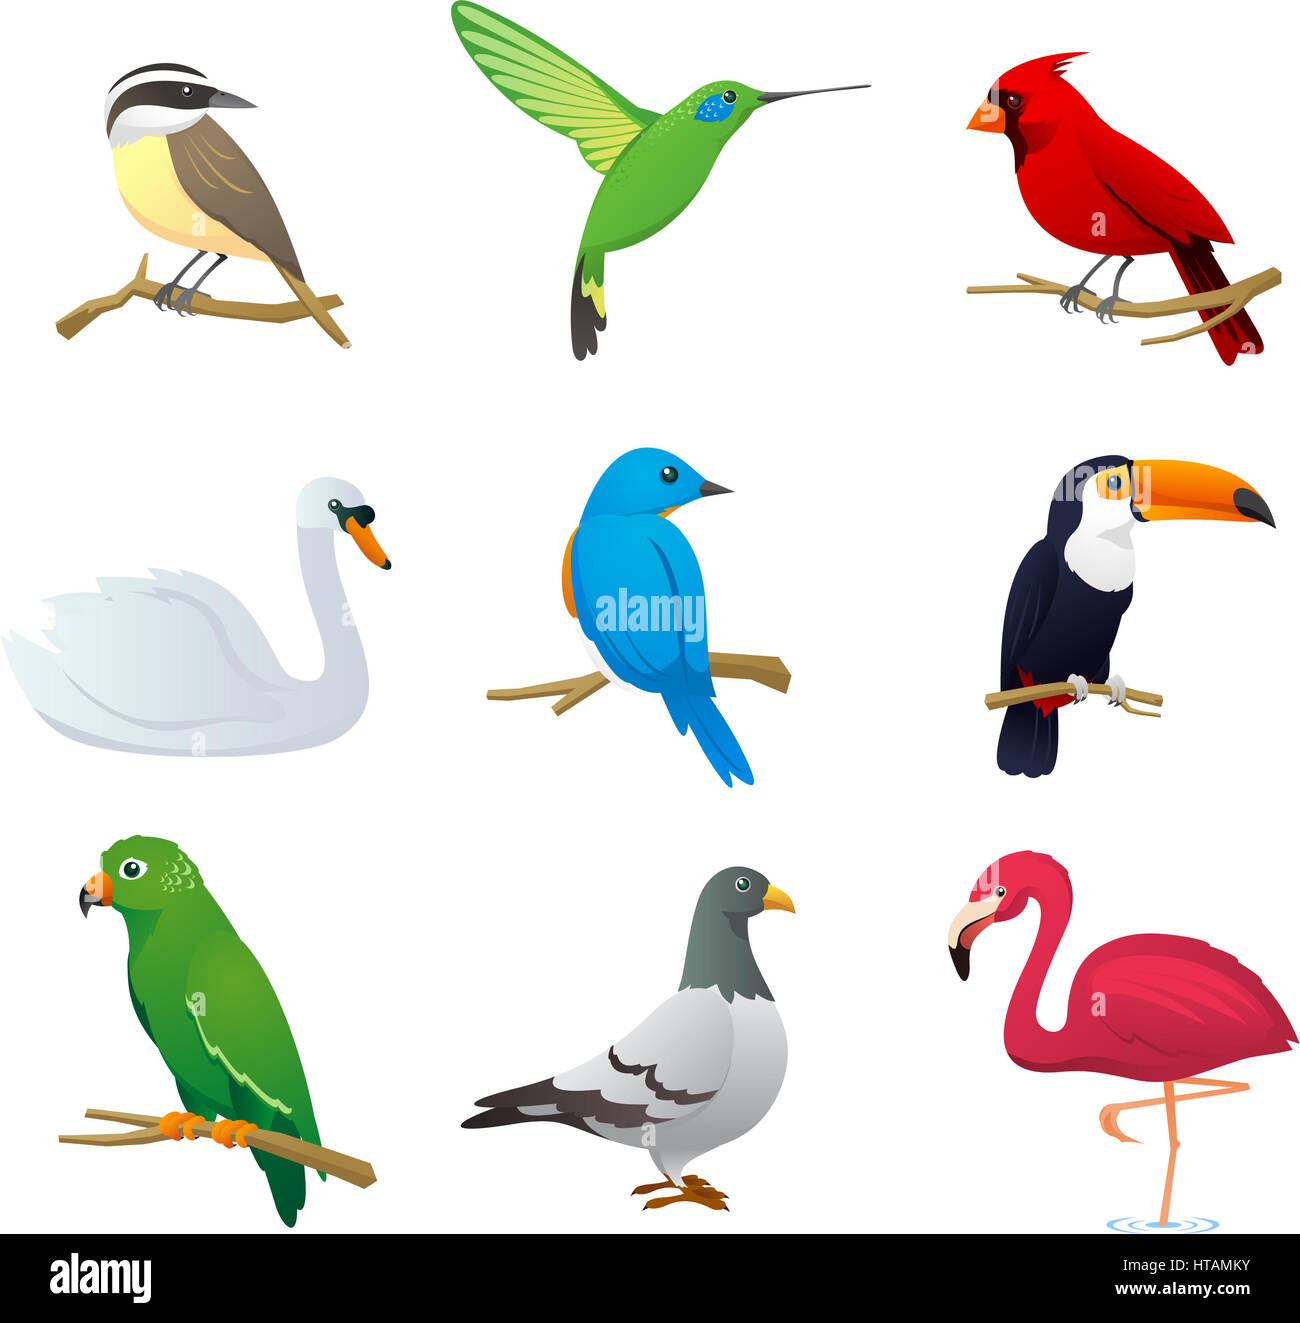 Realistische Arten Vogelsammlung, mit neun verschiedenen Vogelarten Vektor-Illustration. Stockfoto